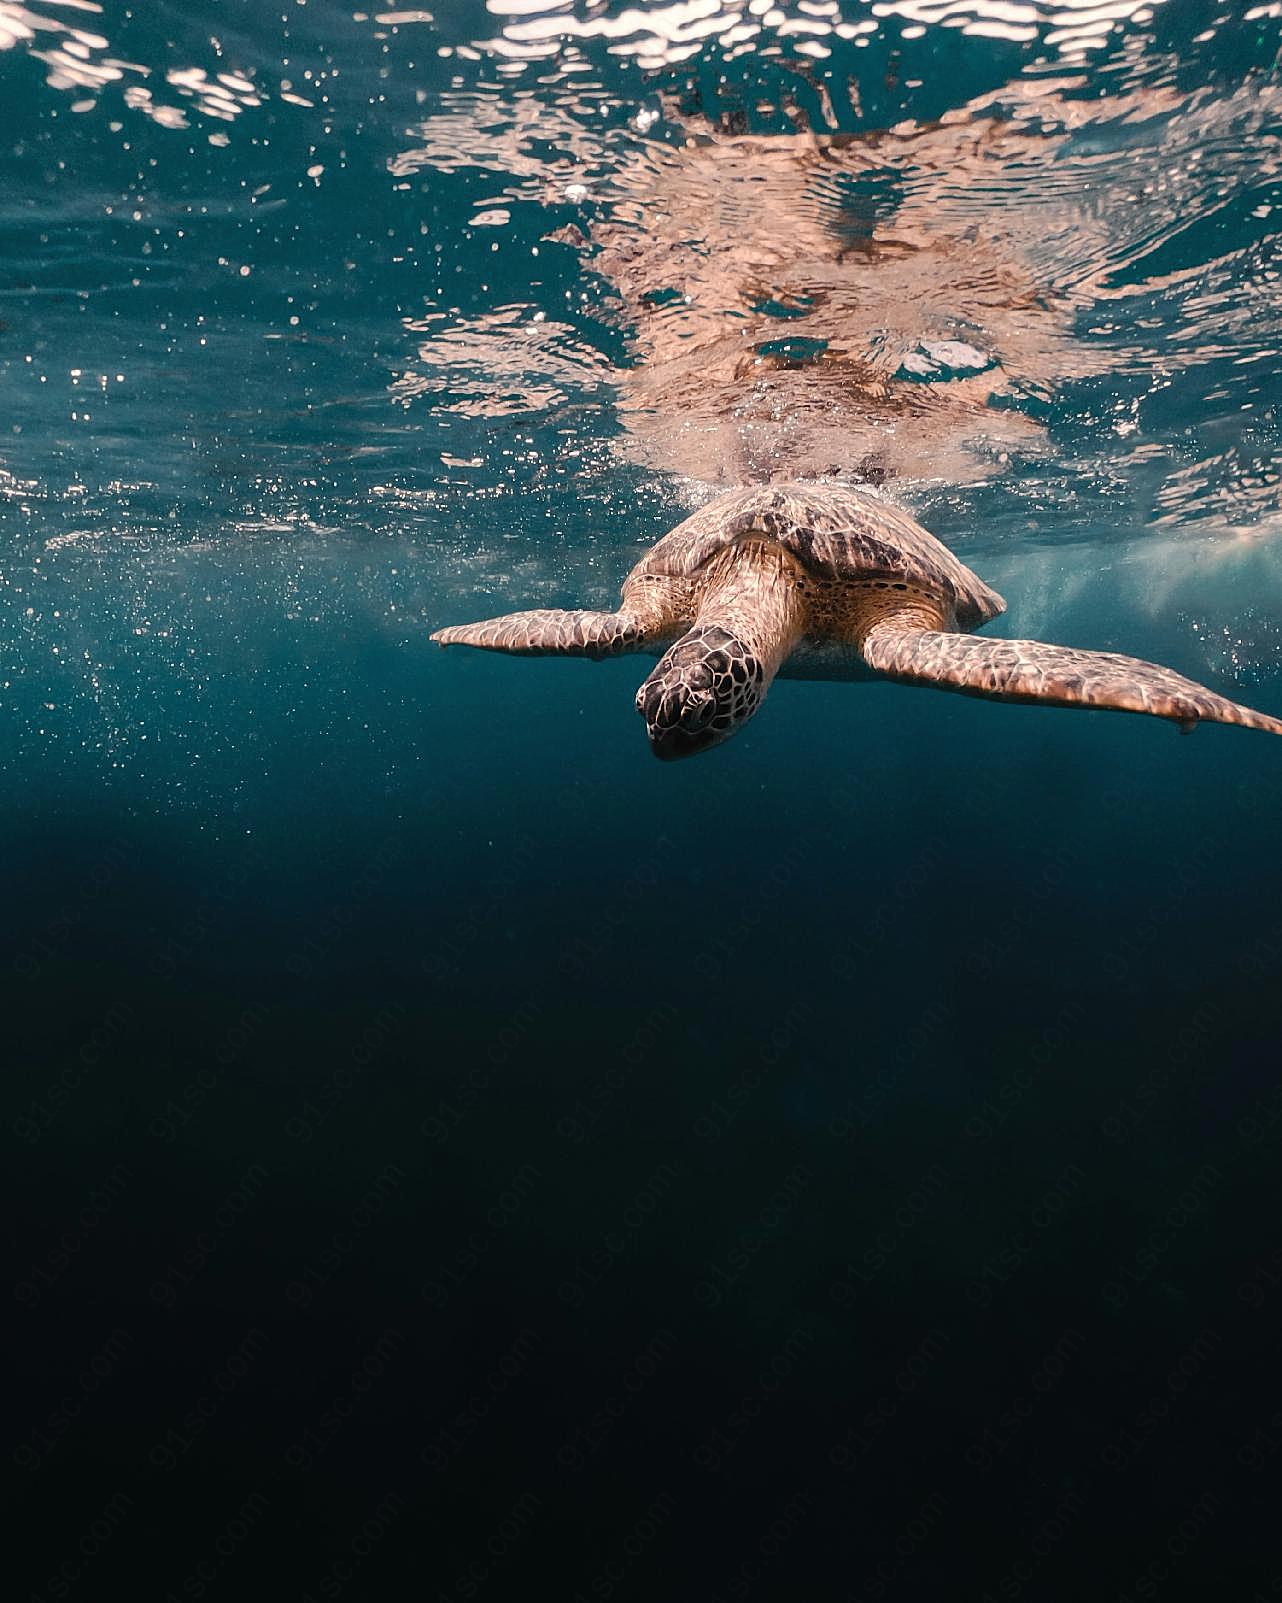 海龟水中游泳图片高清摄影